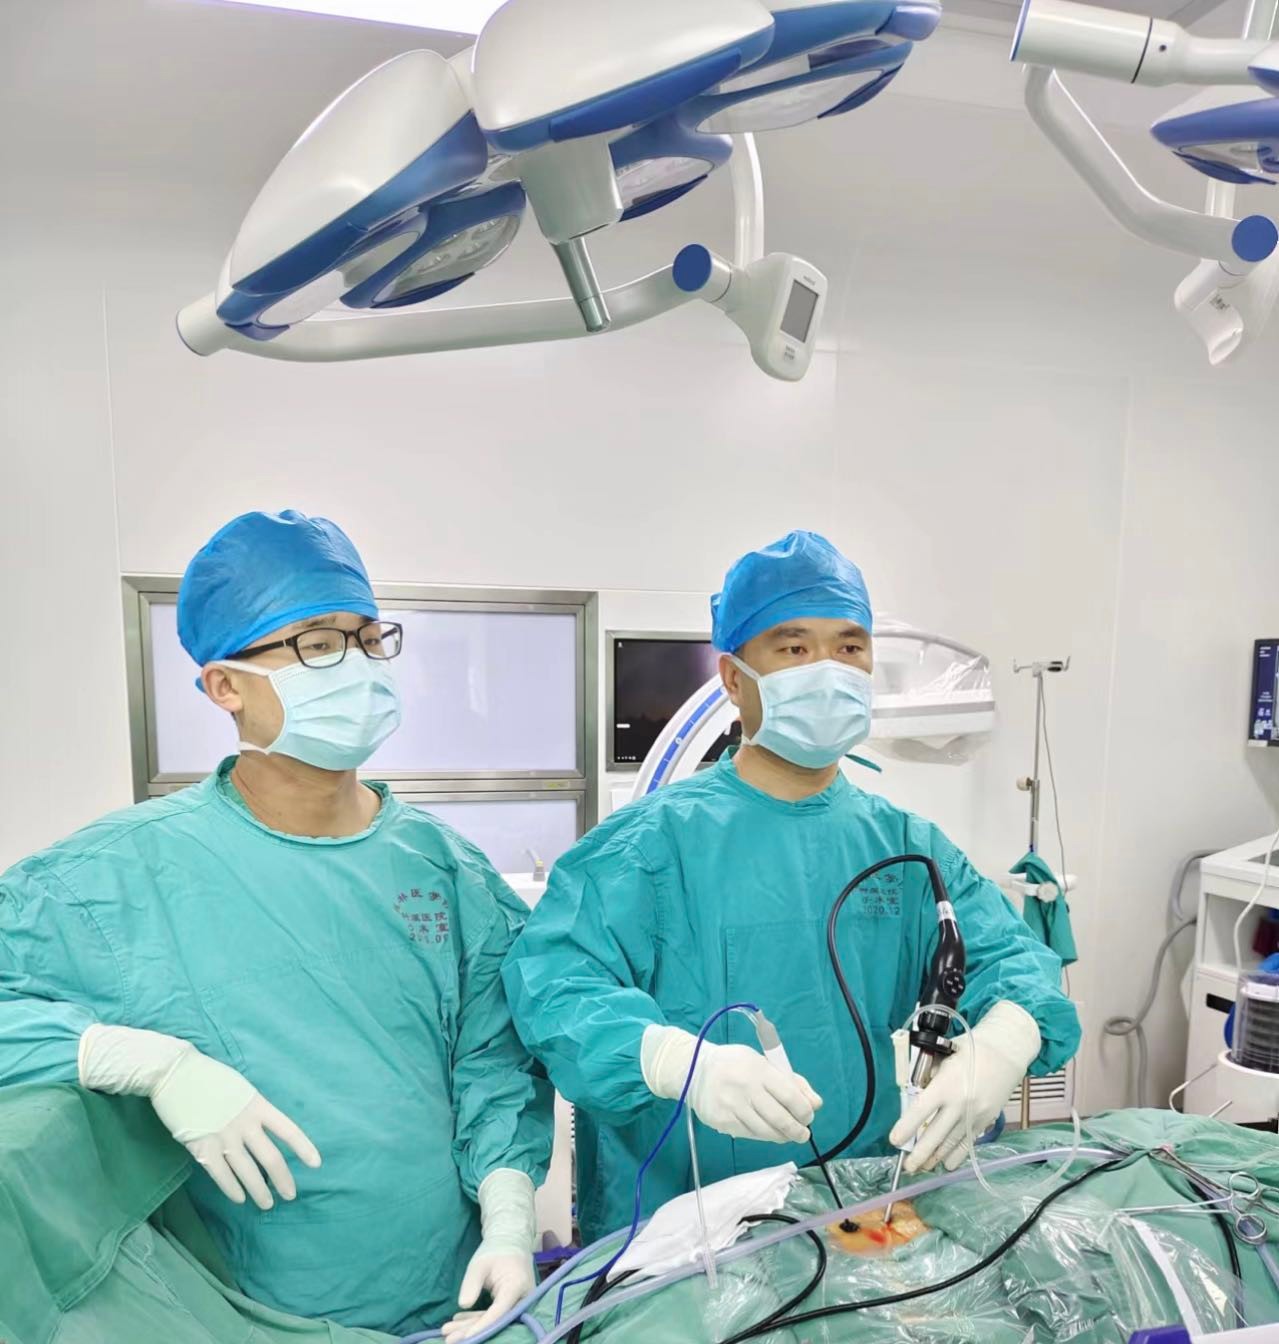 桂医附院脊柱外科主办的2022年第二期脊柱微创技术培训班圆满落幕